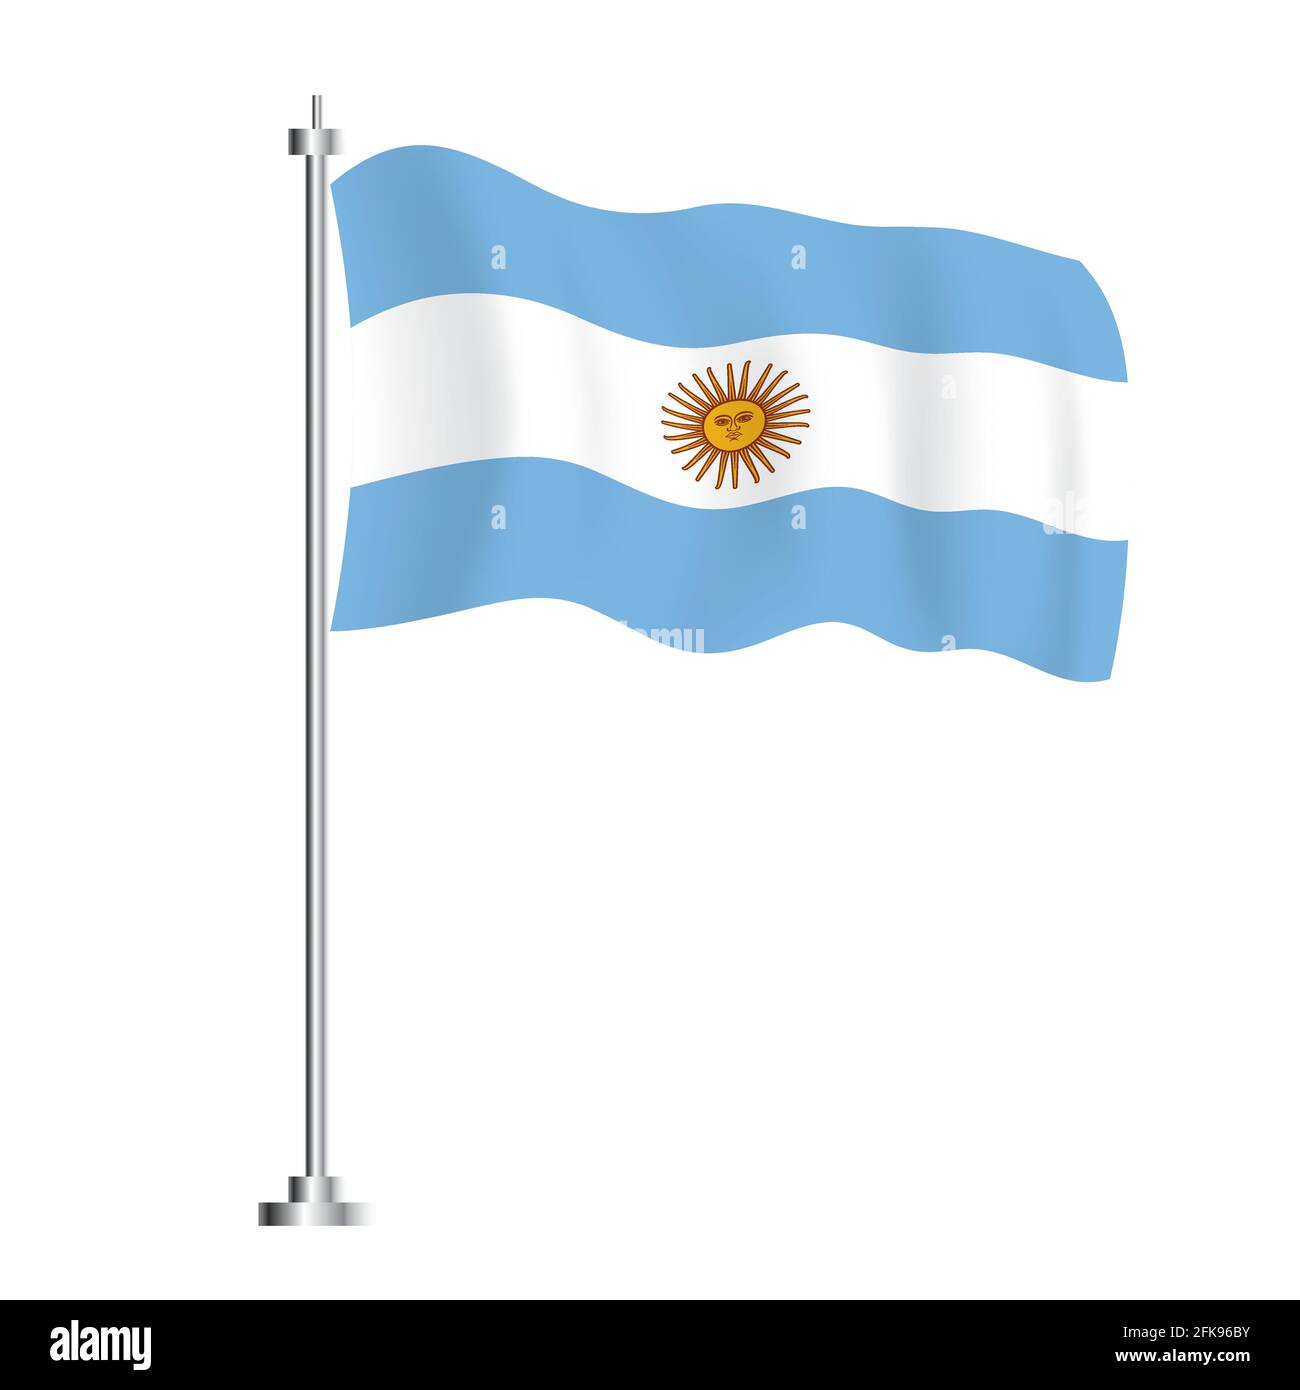 Bandiera argentina. Bandiera ad onda isolata del Paese Argentina. Illustrazione vettoriale. Giorno dell'indipendenza. Illustrazione Vettoriale